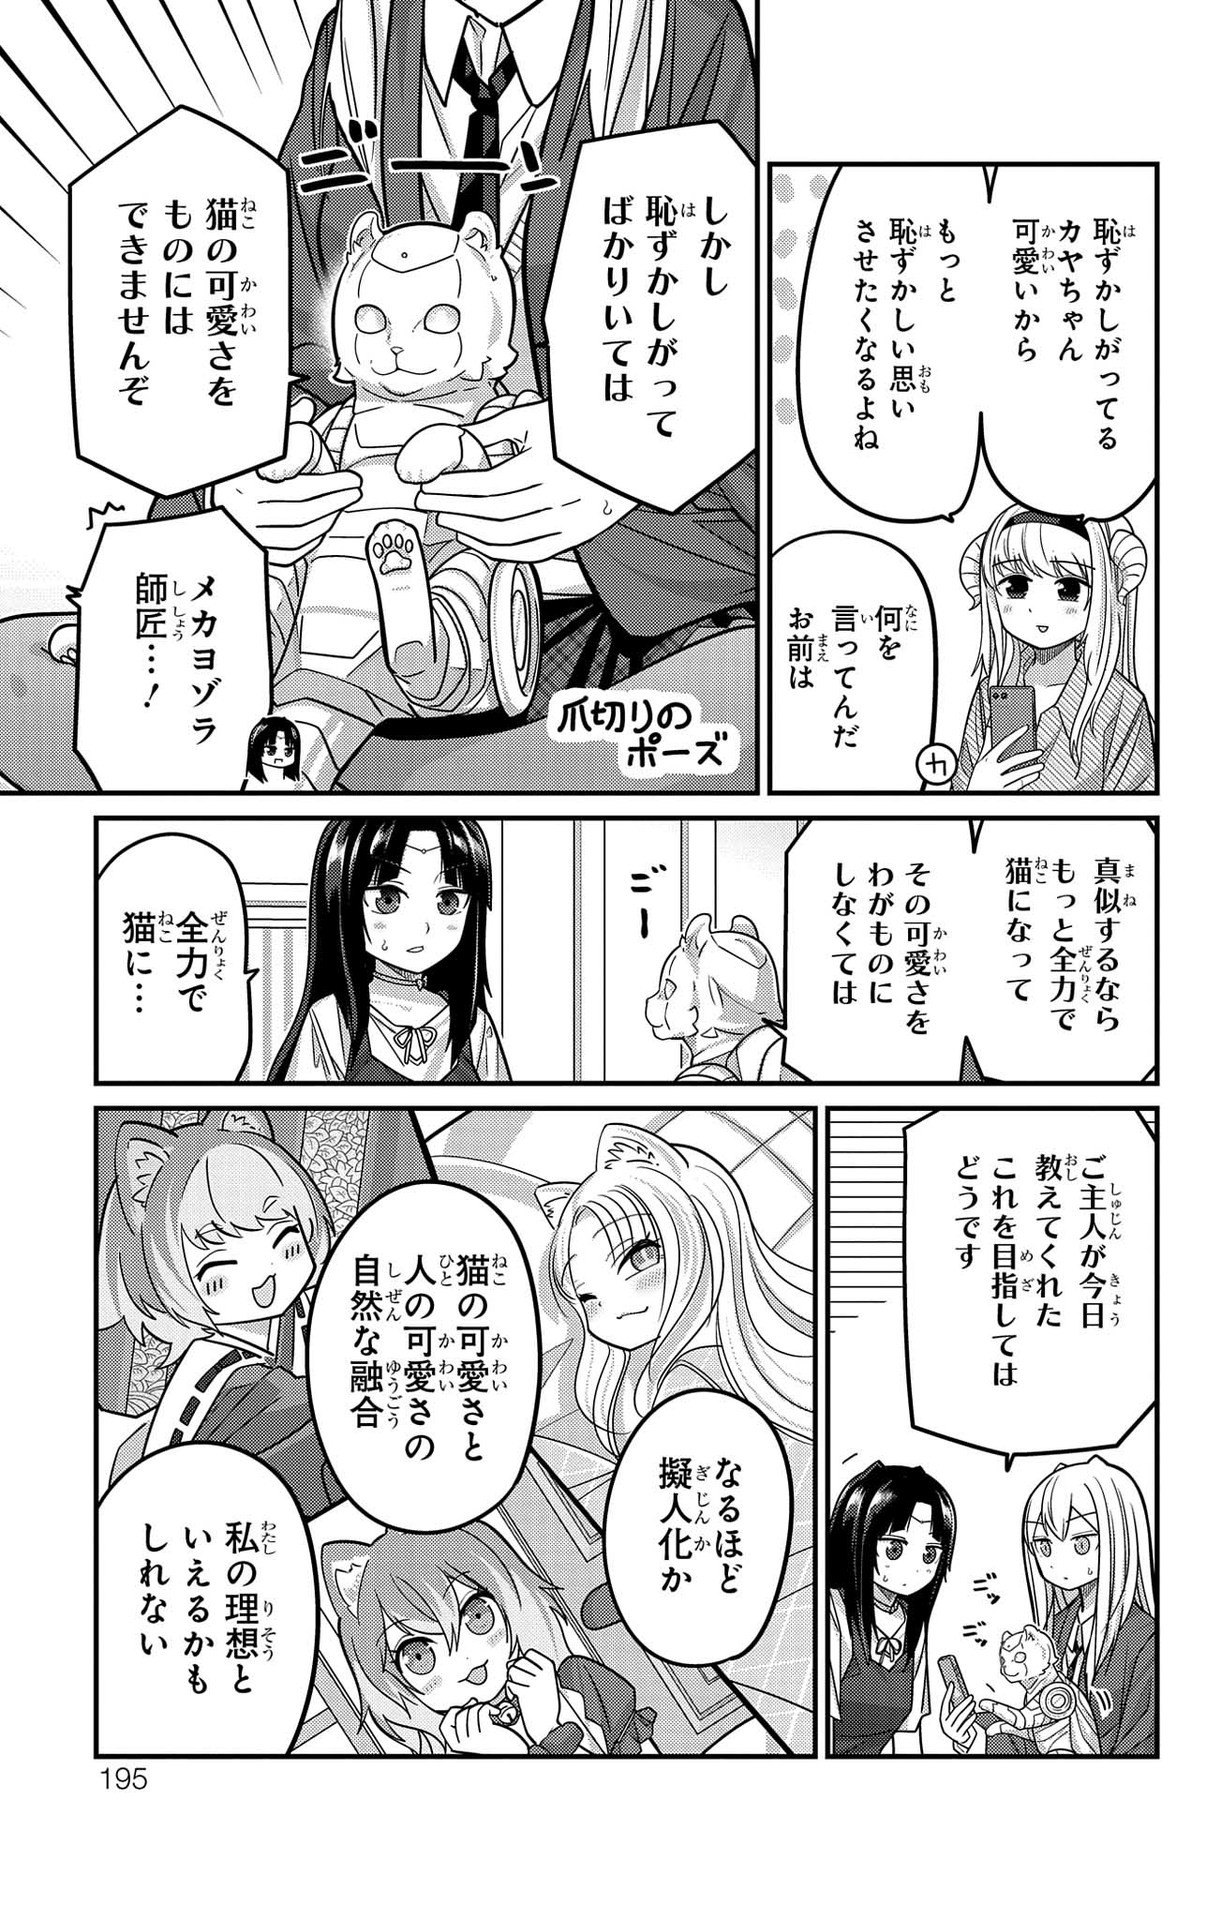 Kawaisugi Crisis - Chapter 96 - Page 5